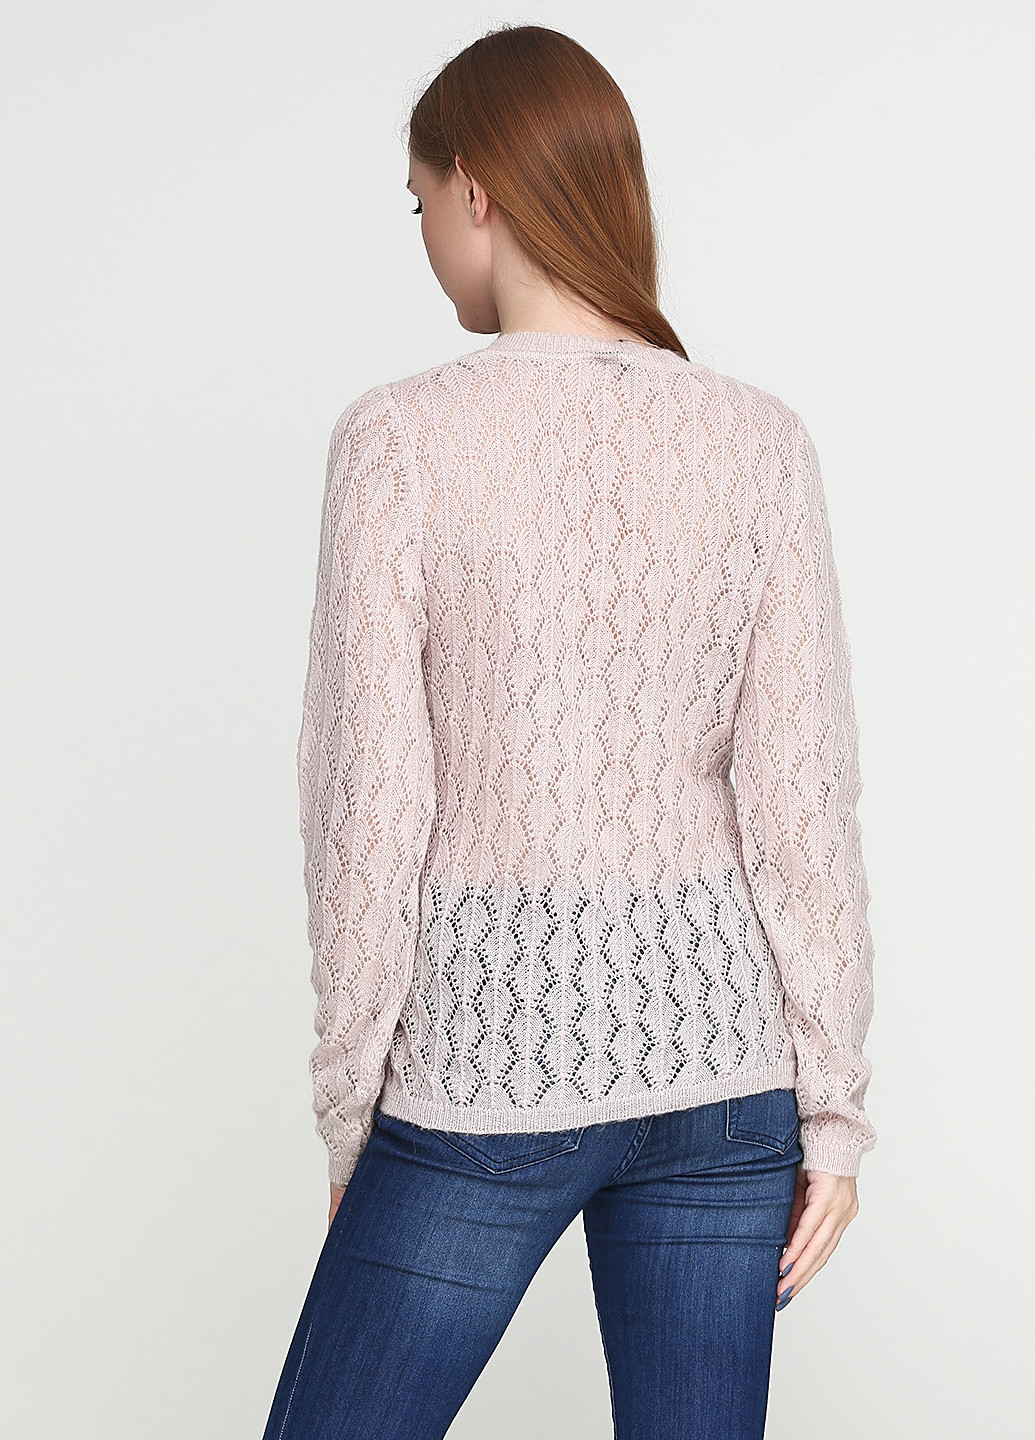 Светло-розовый демисезонный пуловер пуловер Folgore Milano